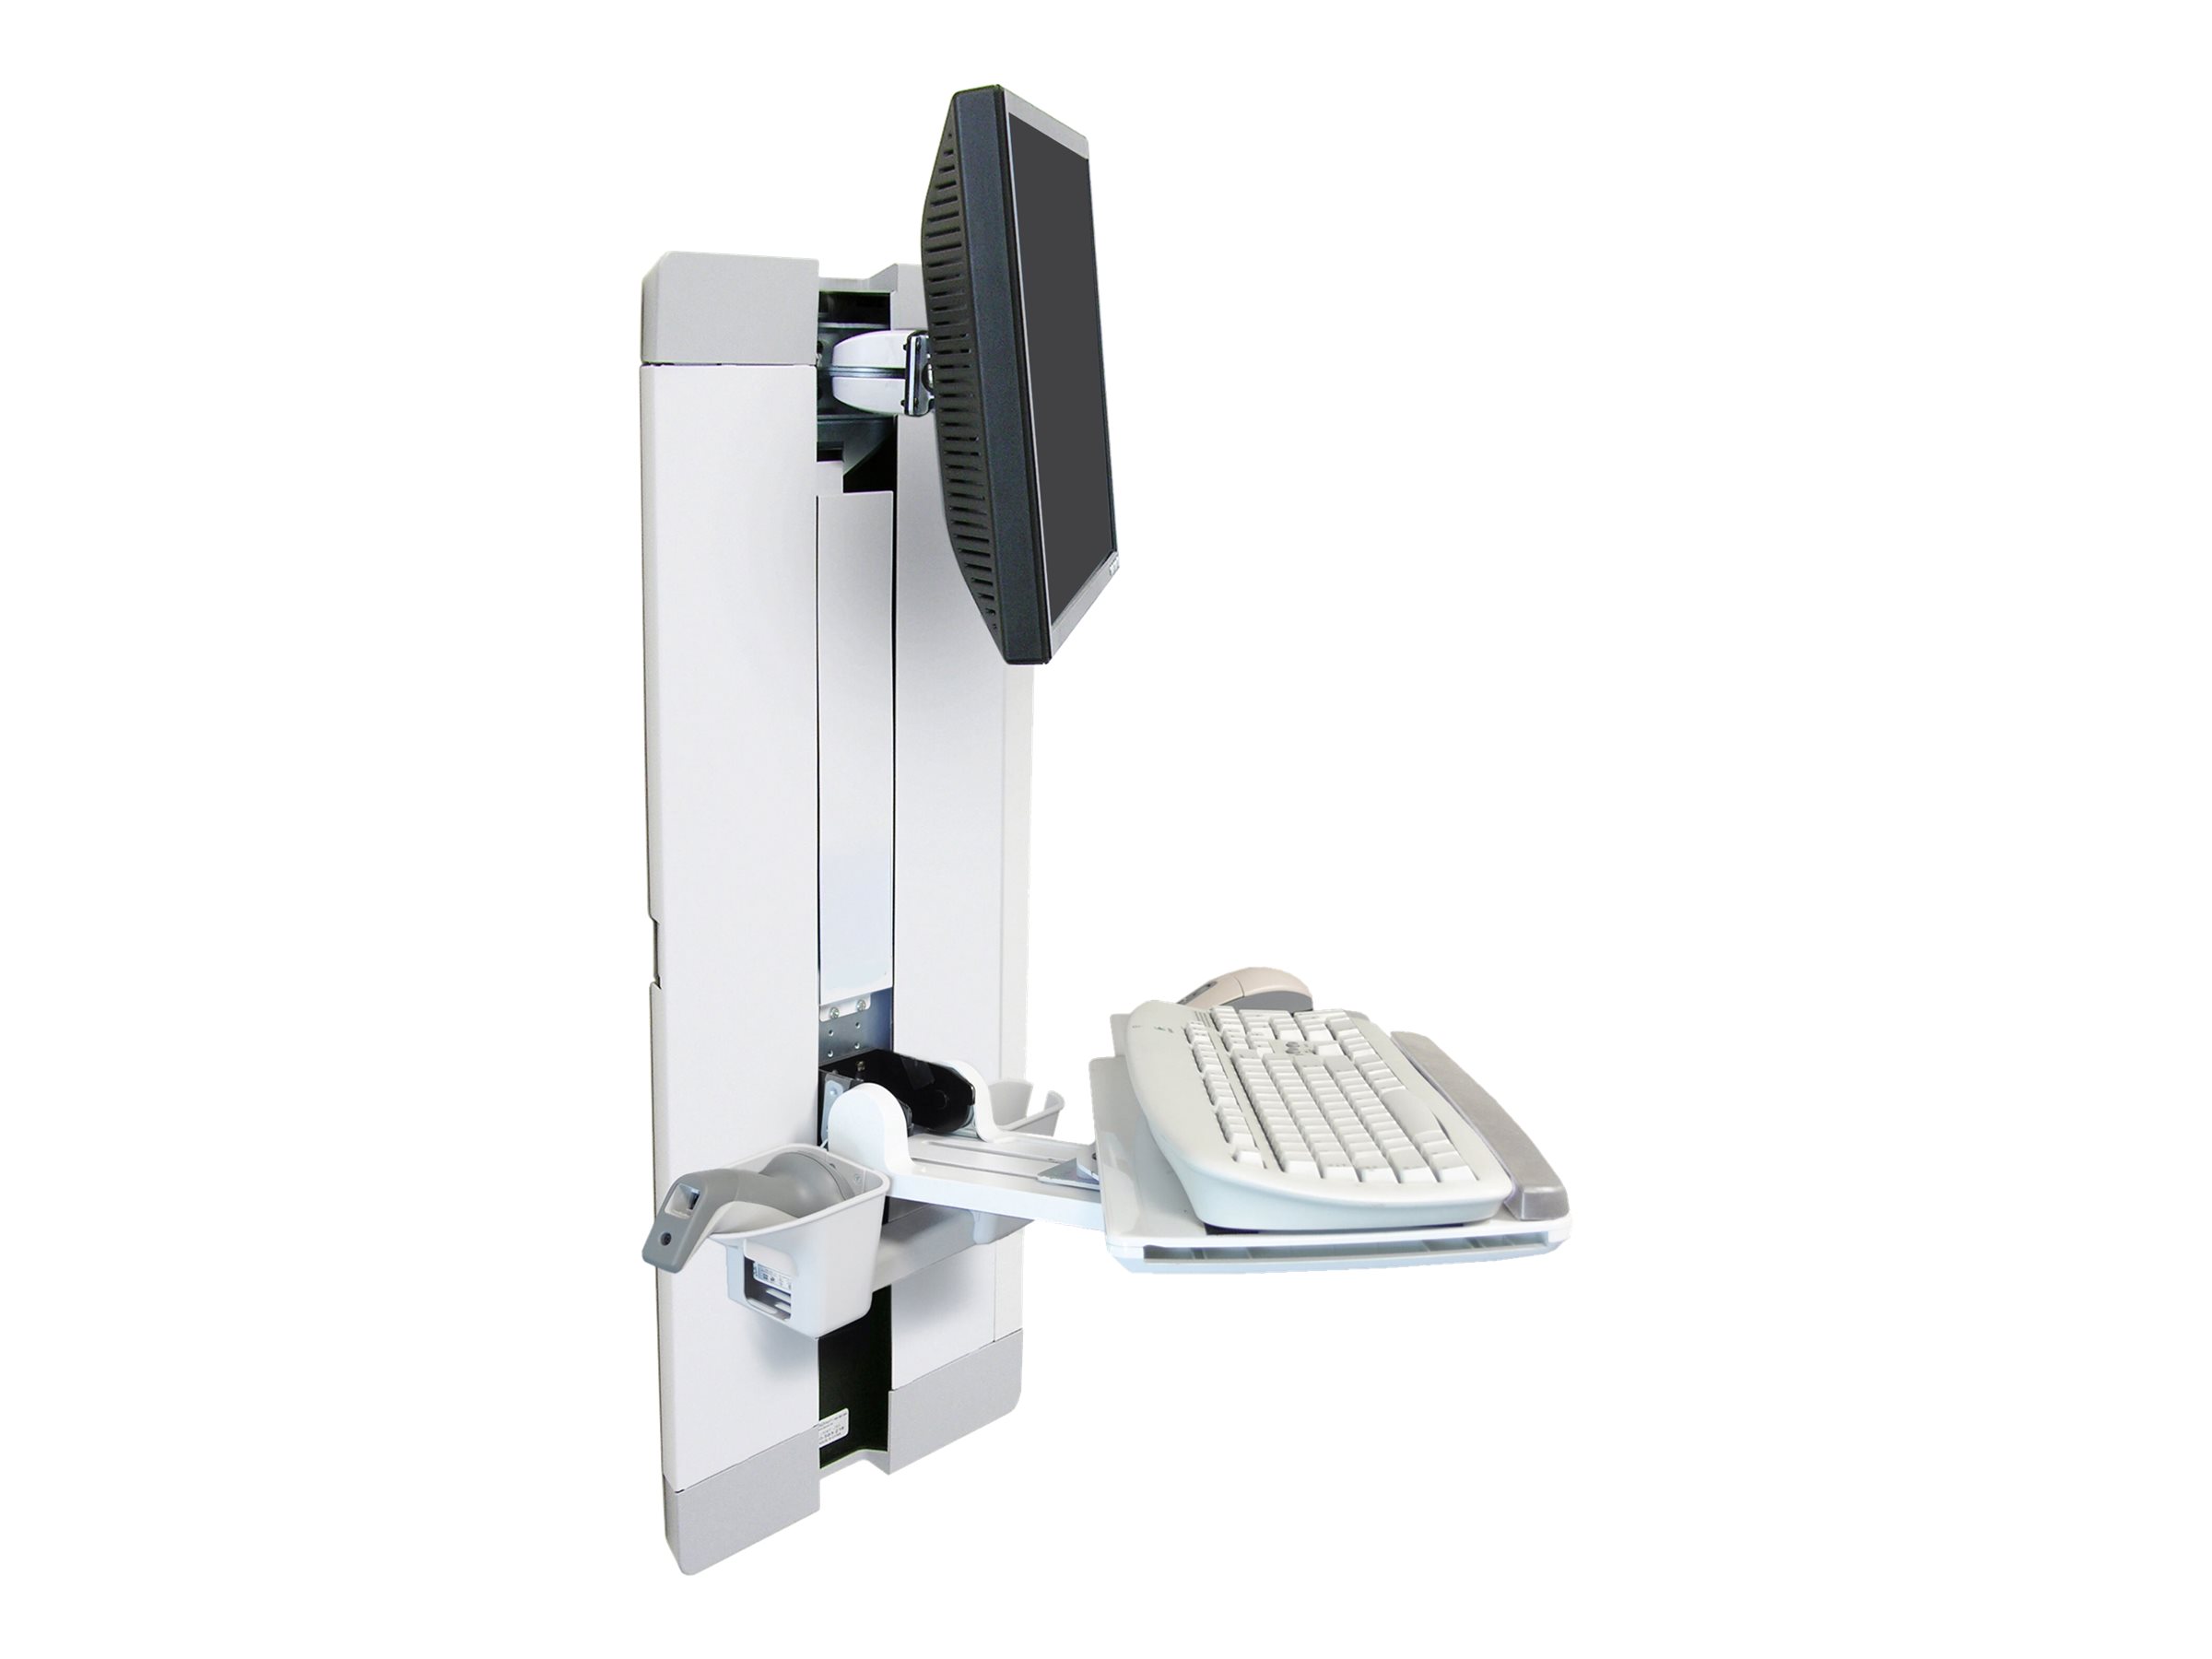 Ergotron - Kit de montage (étagère pour clavier, repose-poignets, pochette pour souris, levage vertical du panneau) - pour écran LCD/équipement PC - chambre de patient - acier - blanc - Taille d'écran : jusqu'à 24 pouces - 60-609-216 - Montages pour TV et moniteur